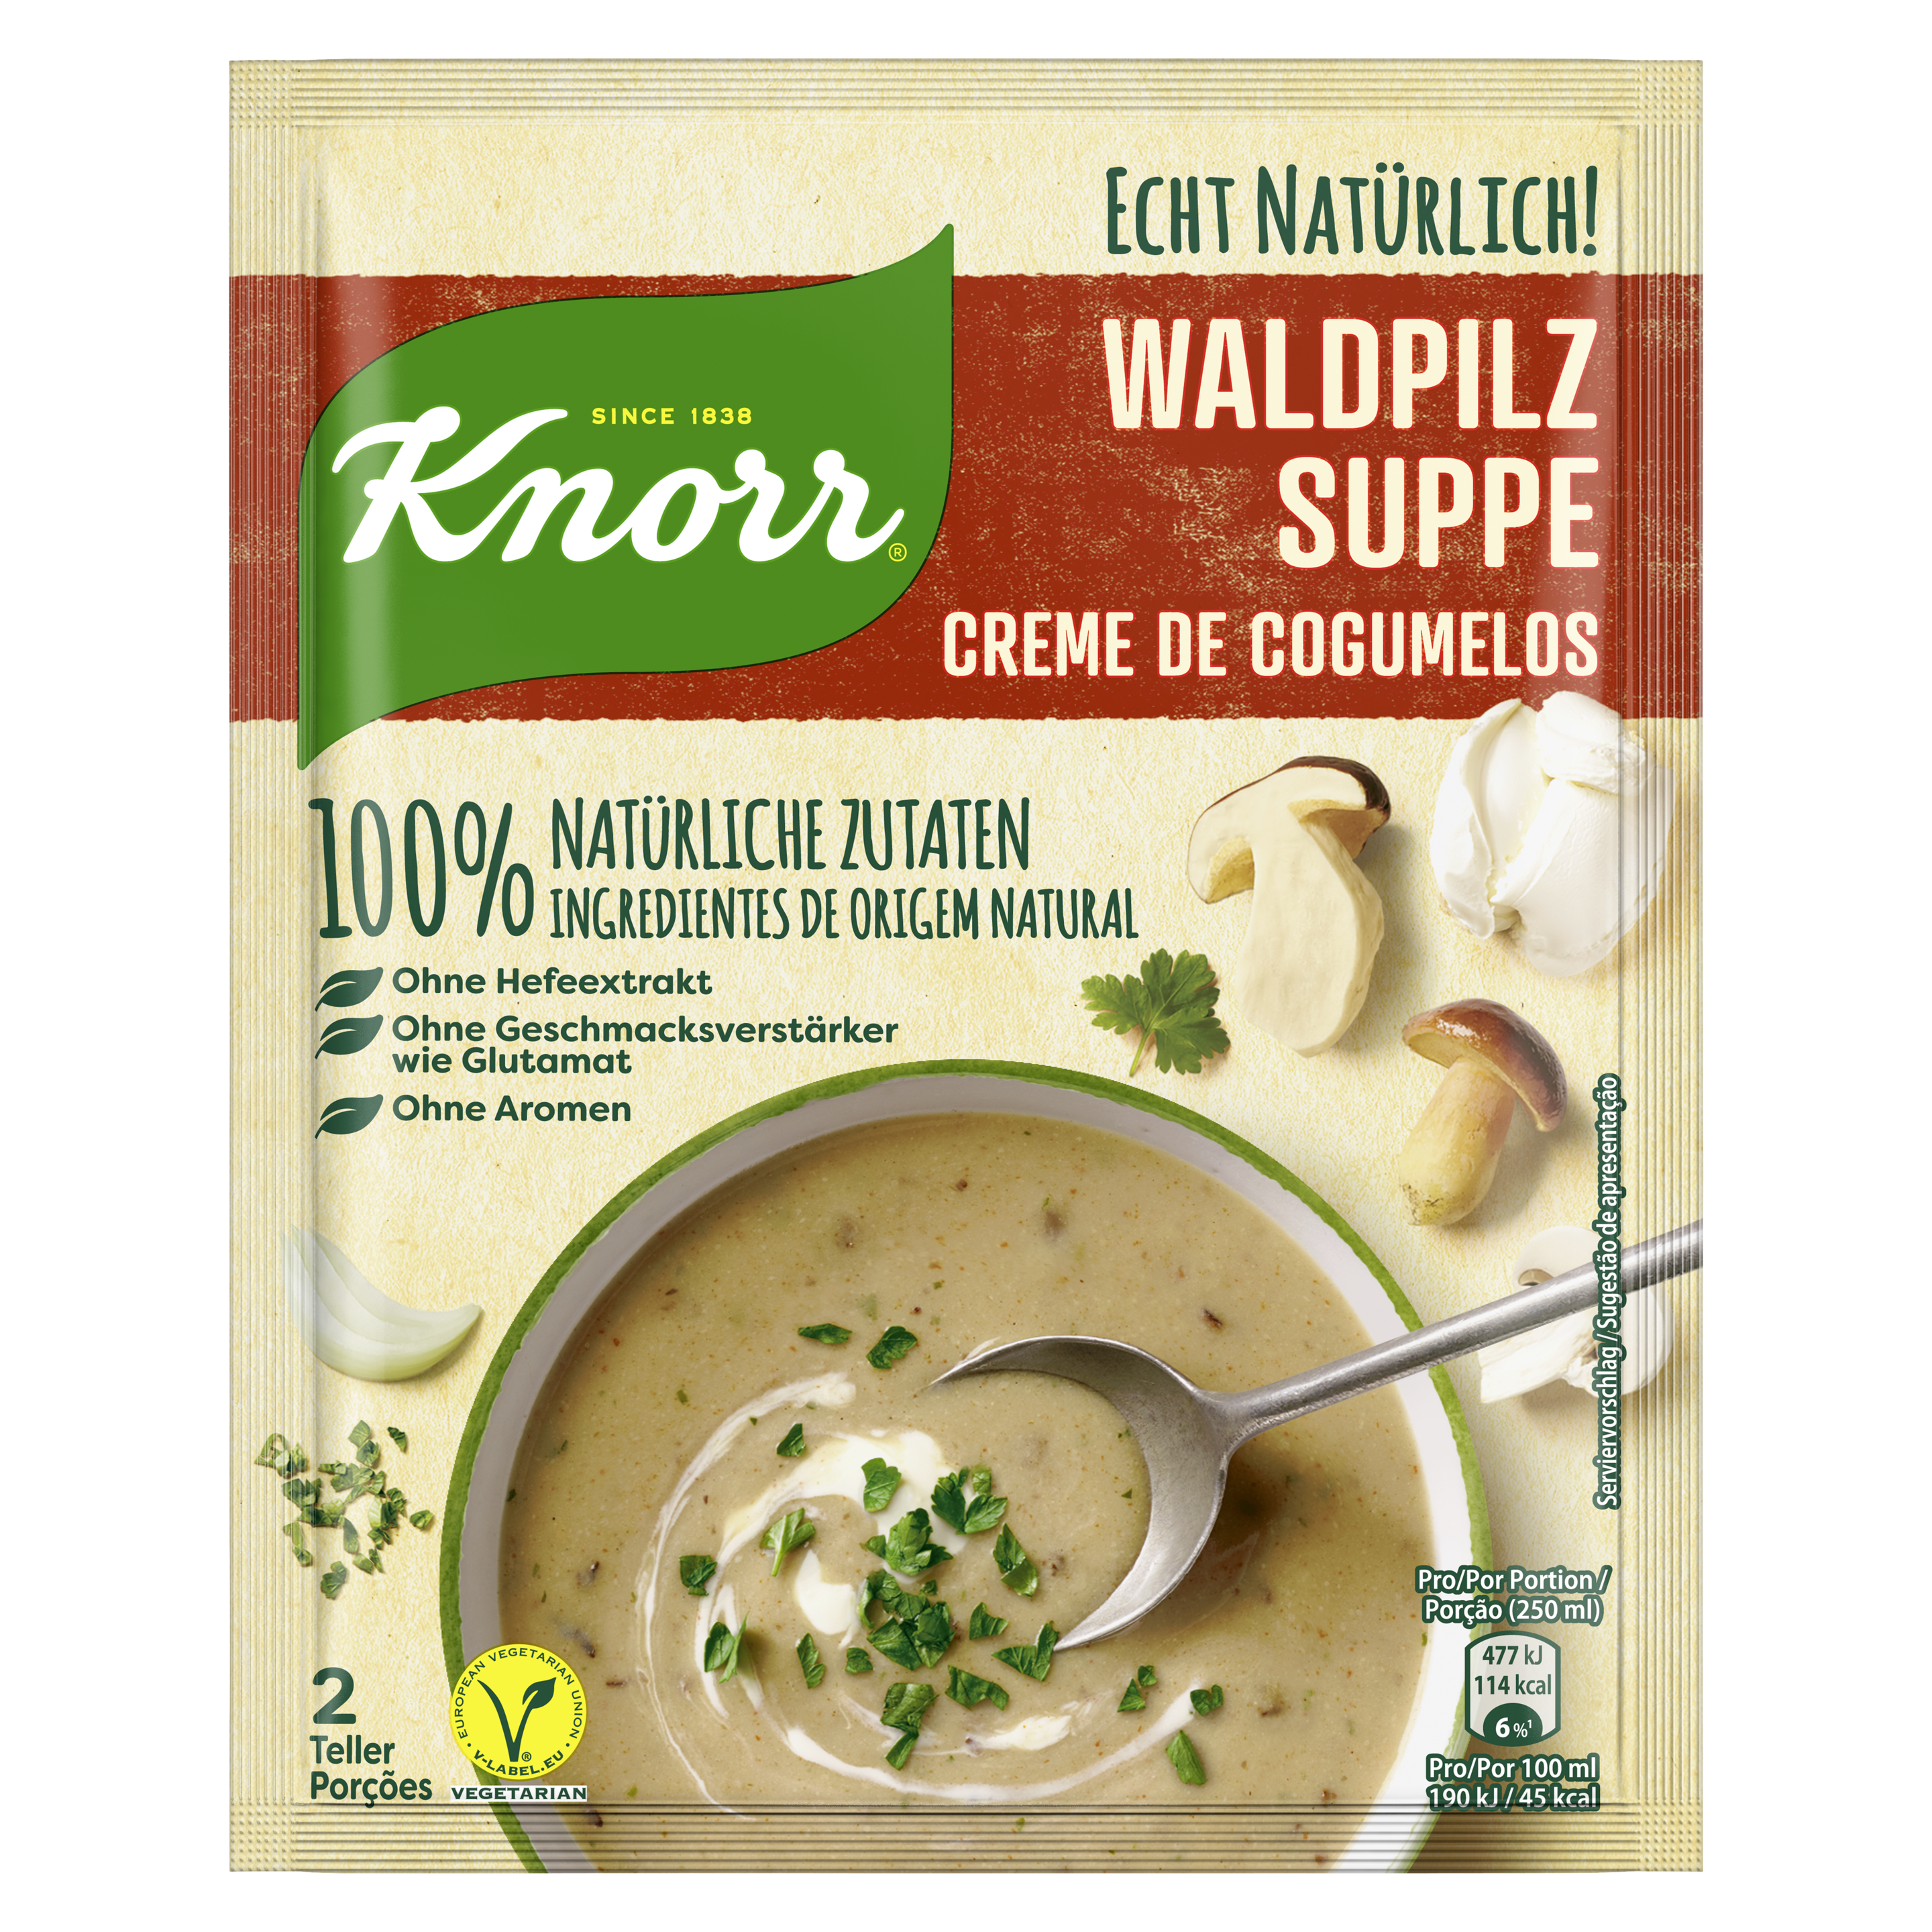 Knorr Echt Natürlich Waldpilz Suppe 2 Teller